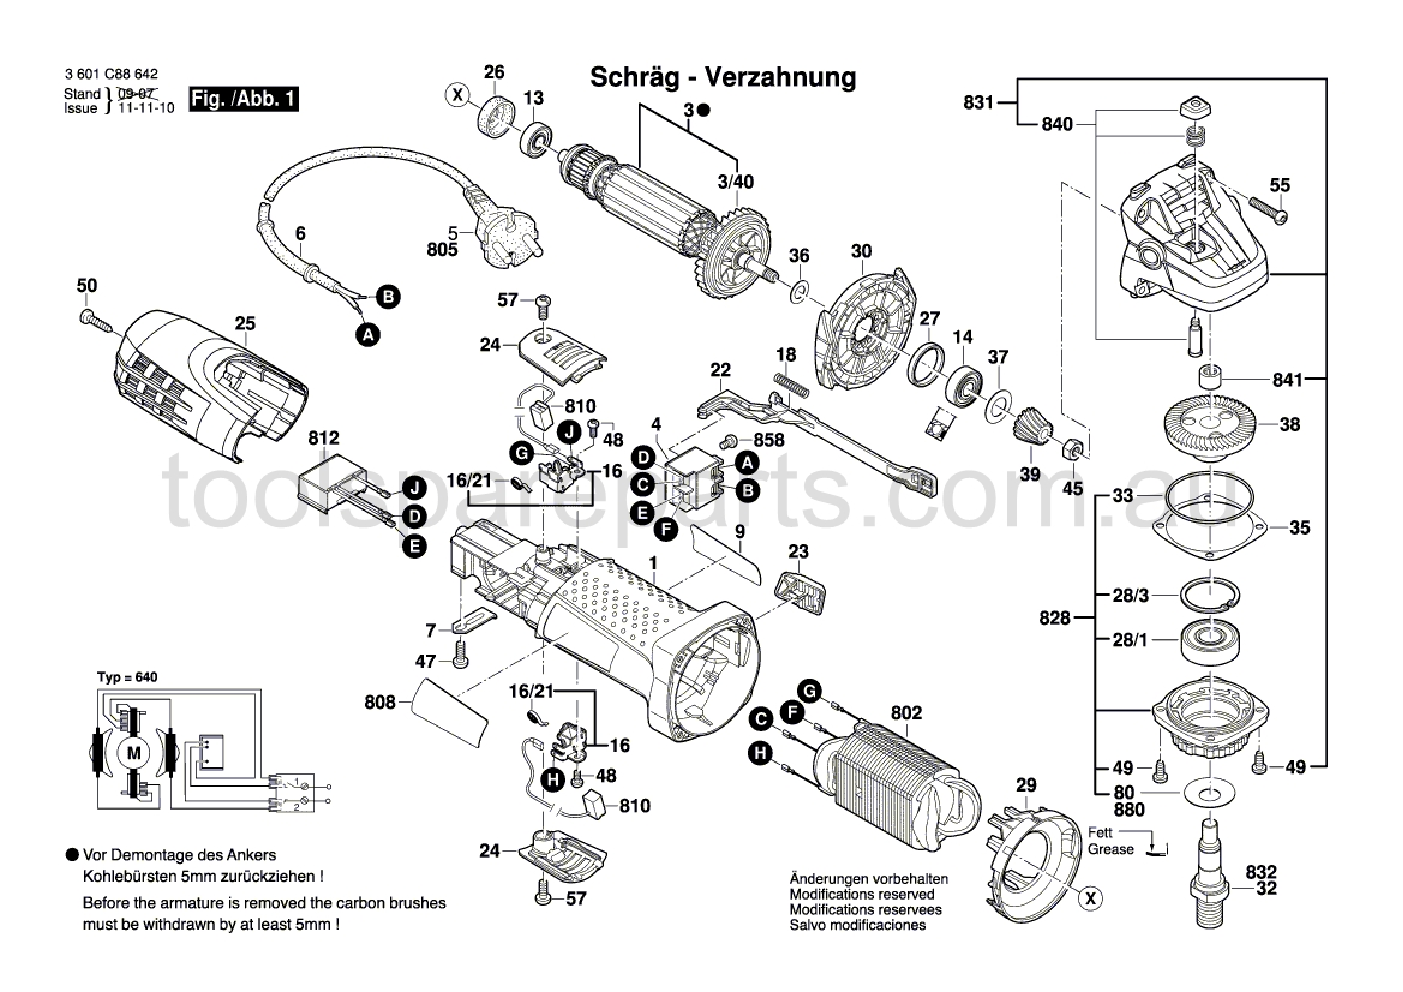 Bosch GWS 7-125 T 3601C88642  Diagram 1